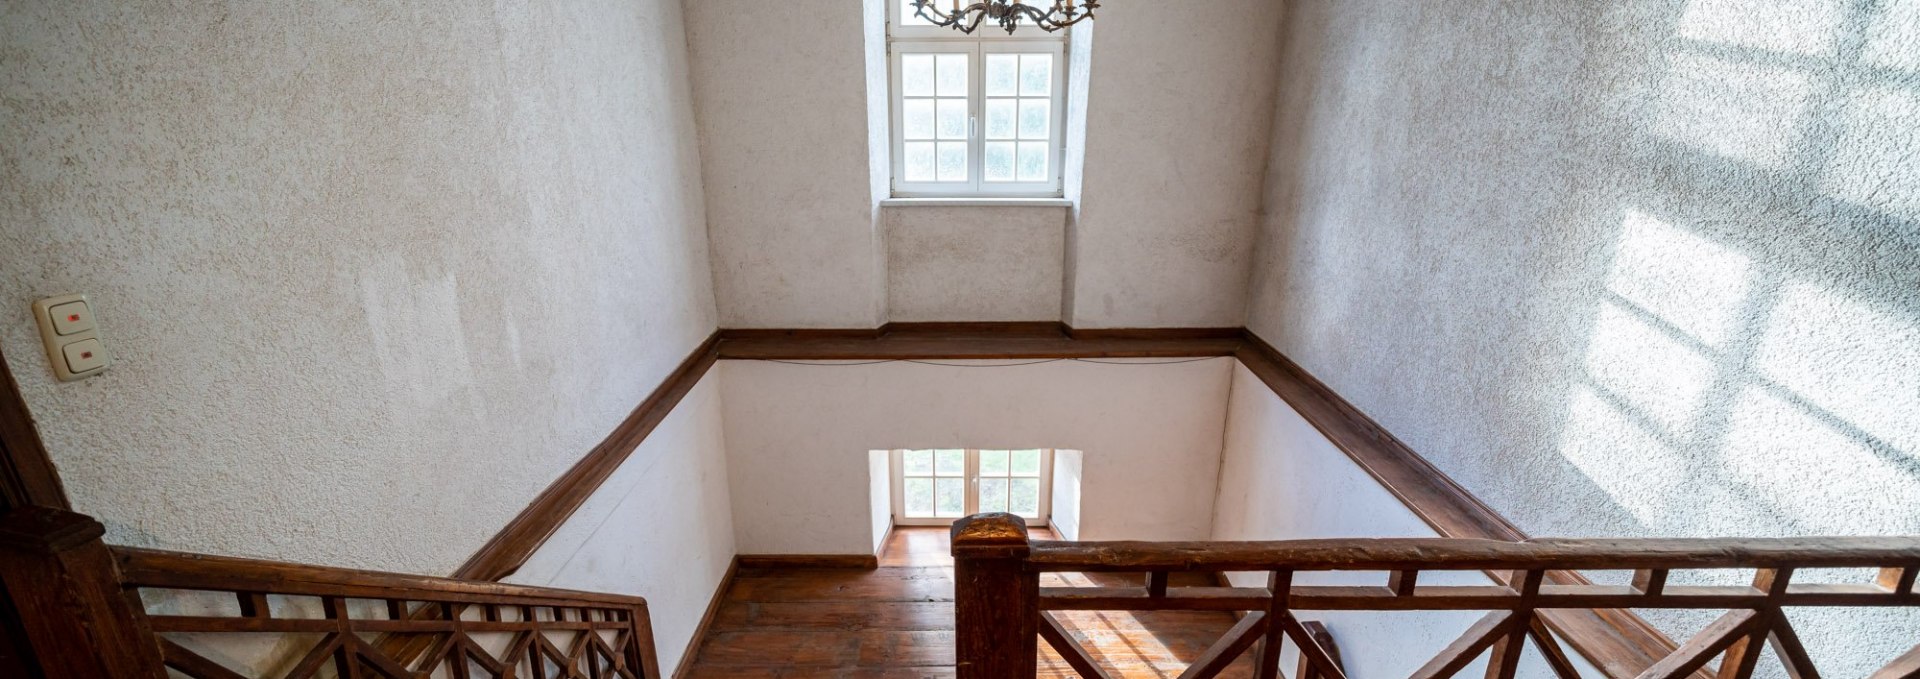 Treppenhaus im Barocken Gutshaus, © DOMUSImages